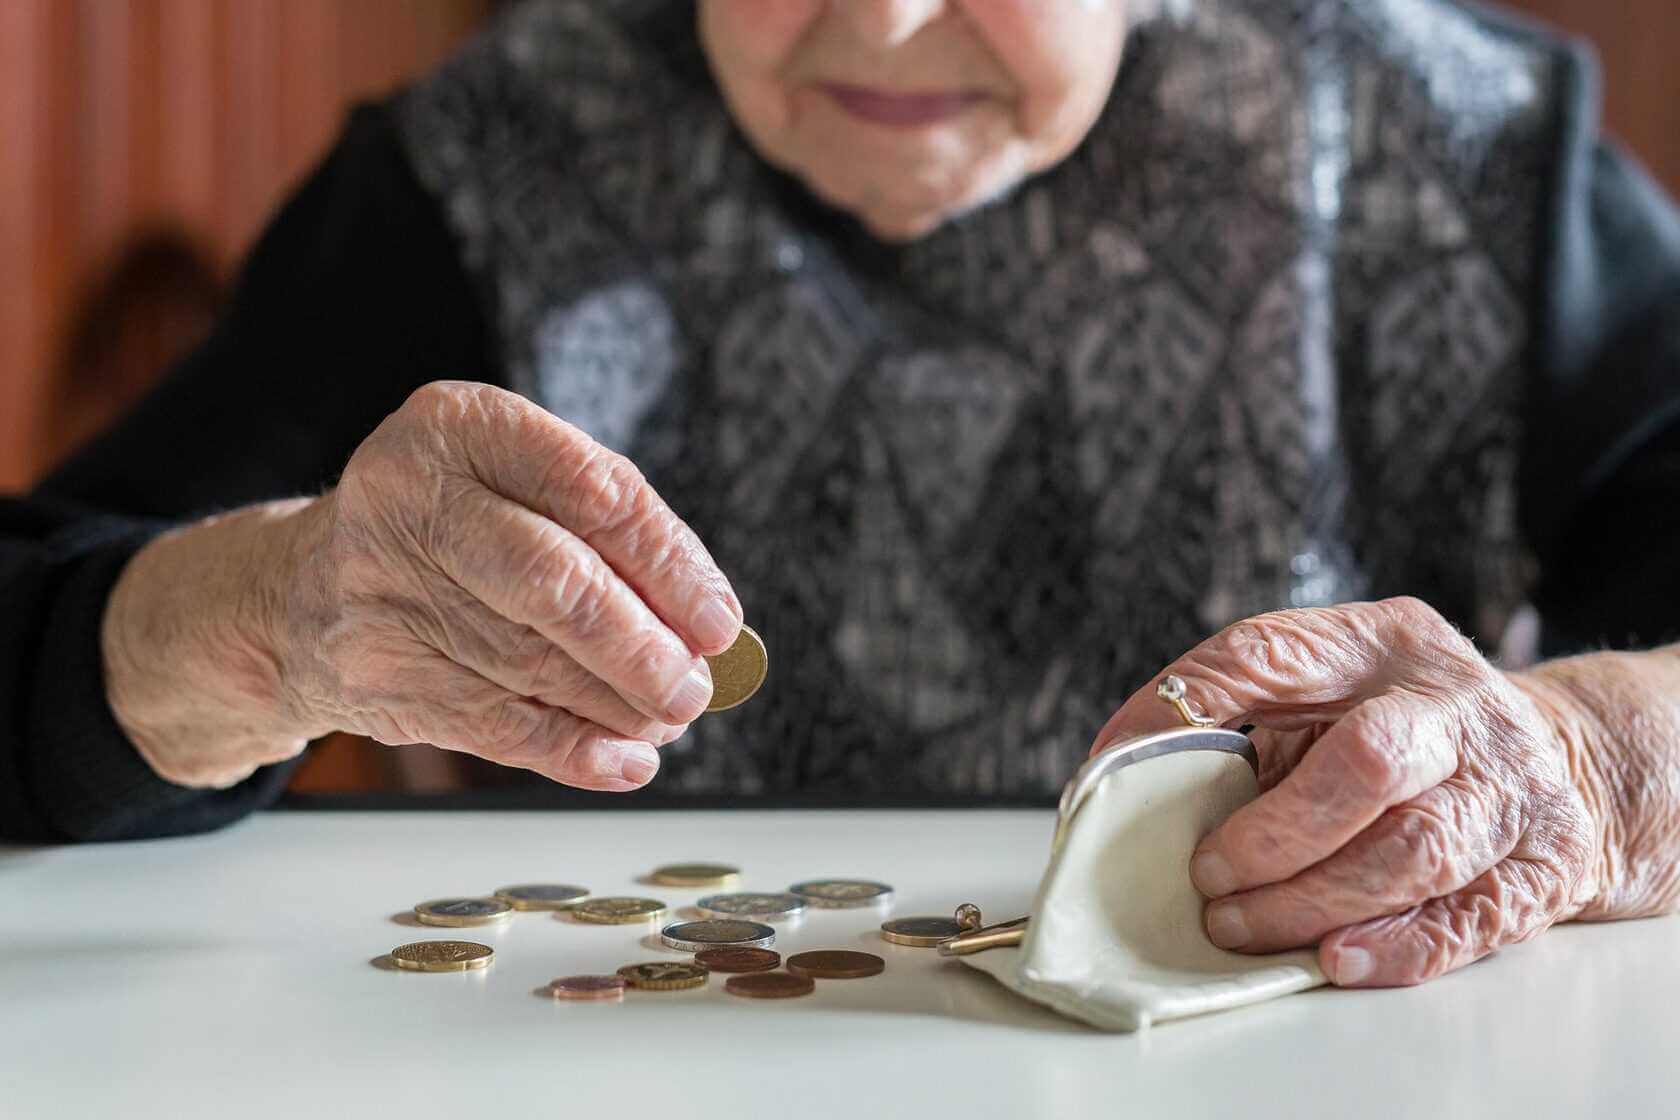 Могилевчанин помогал пенсионеру по хозяйству и украл у старика 600 рублей